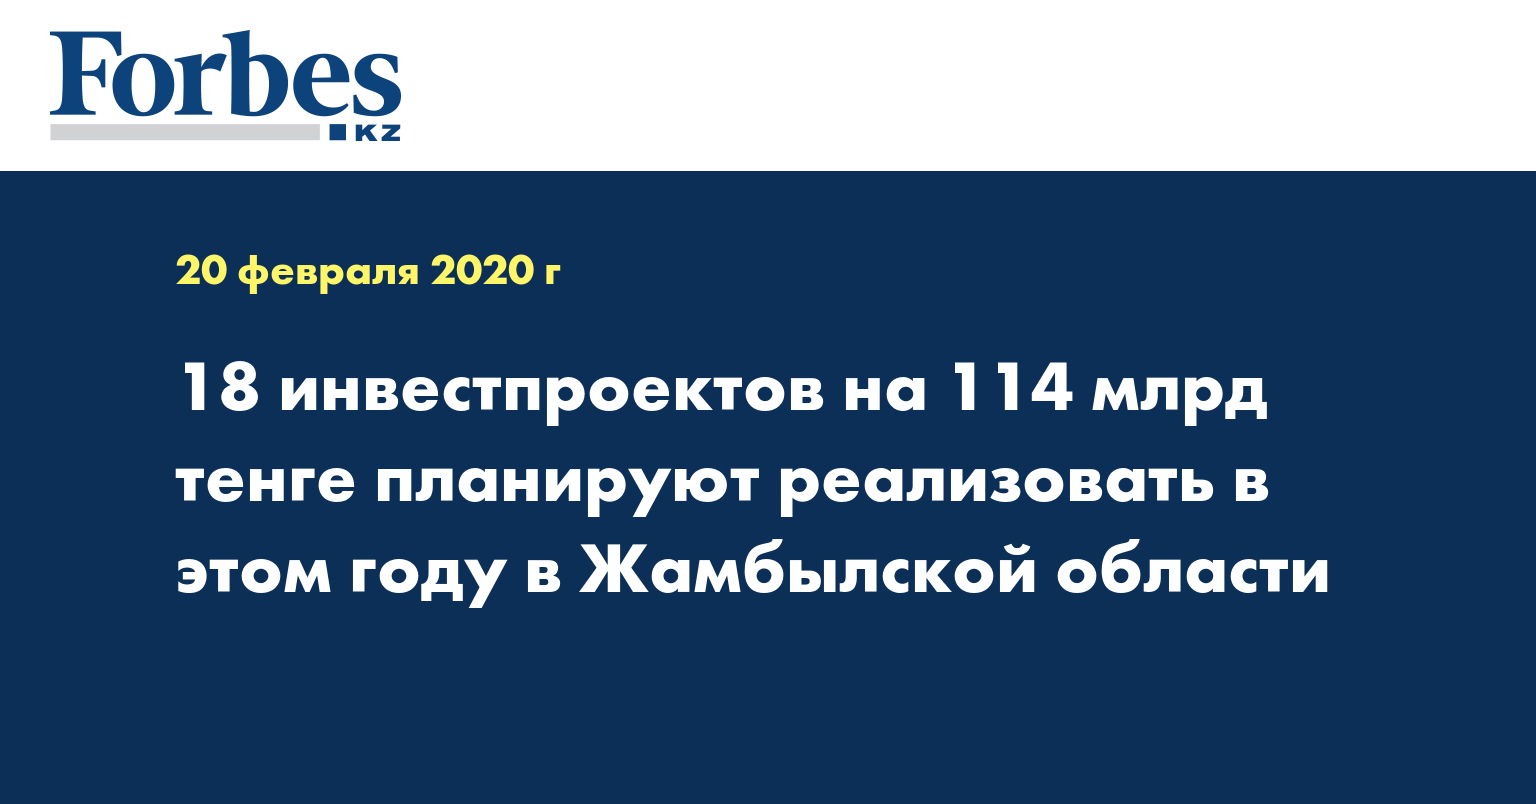 18 инвестпроектов на 114 млрд тенге планируют реализовать в этом году в Жамбылской области